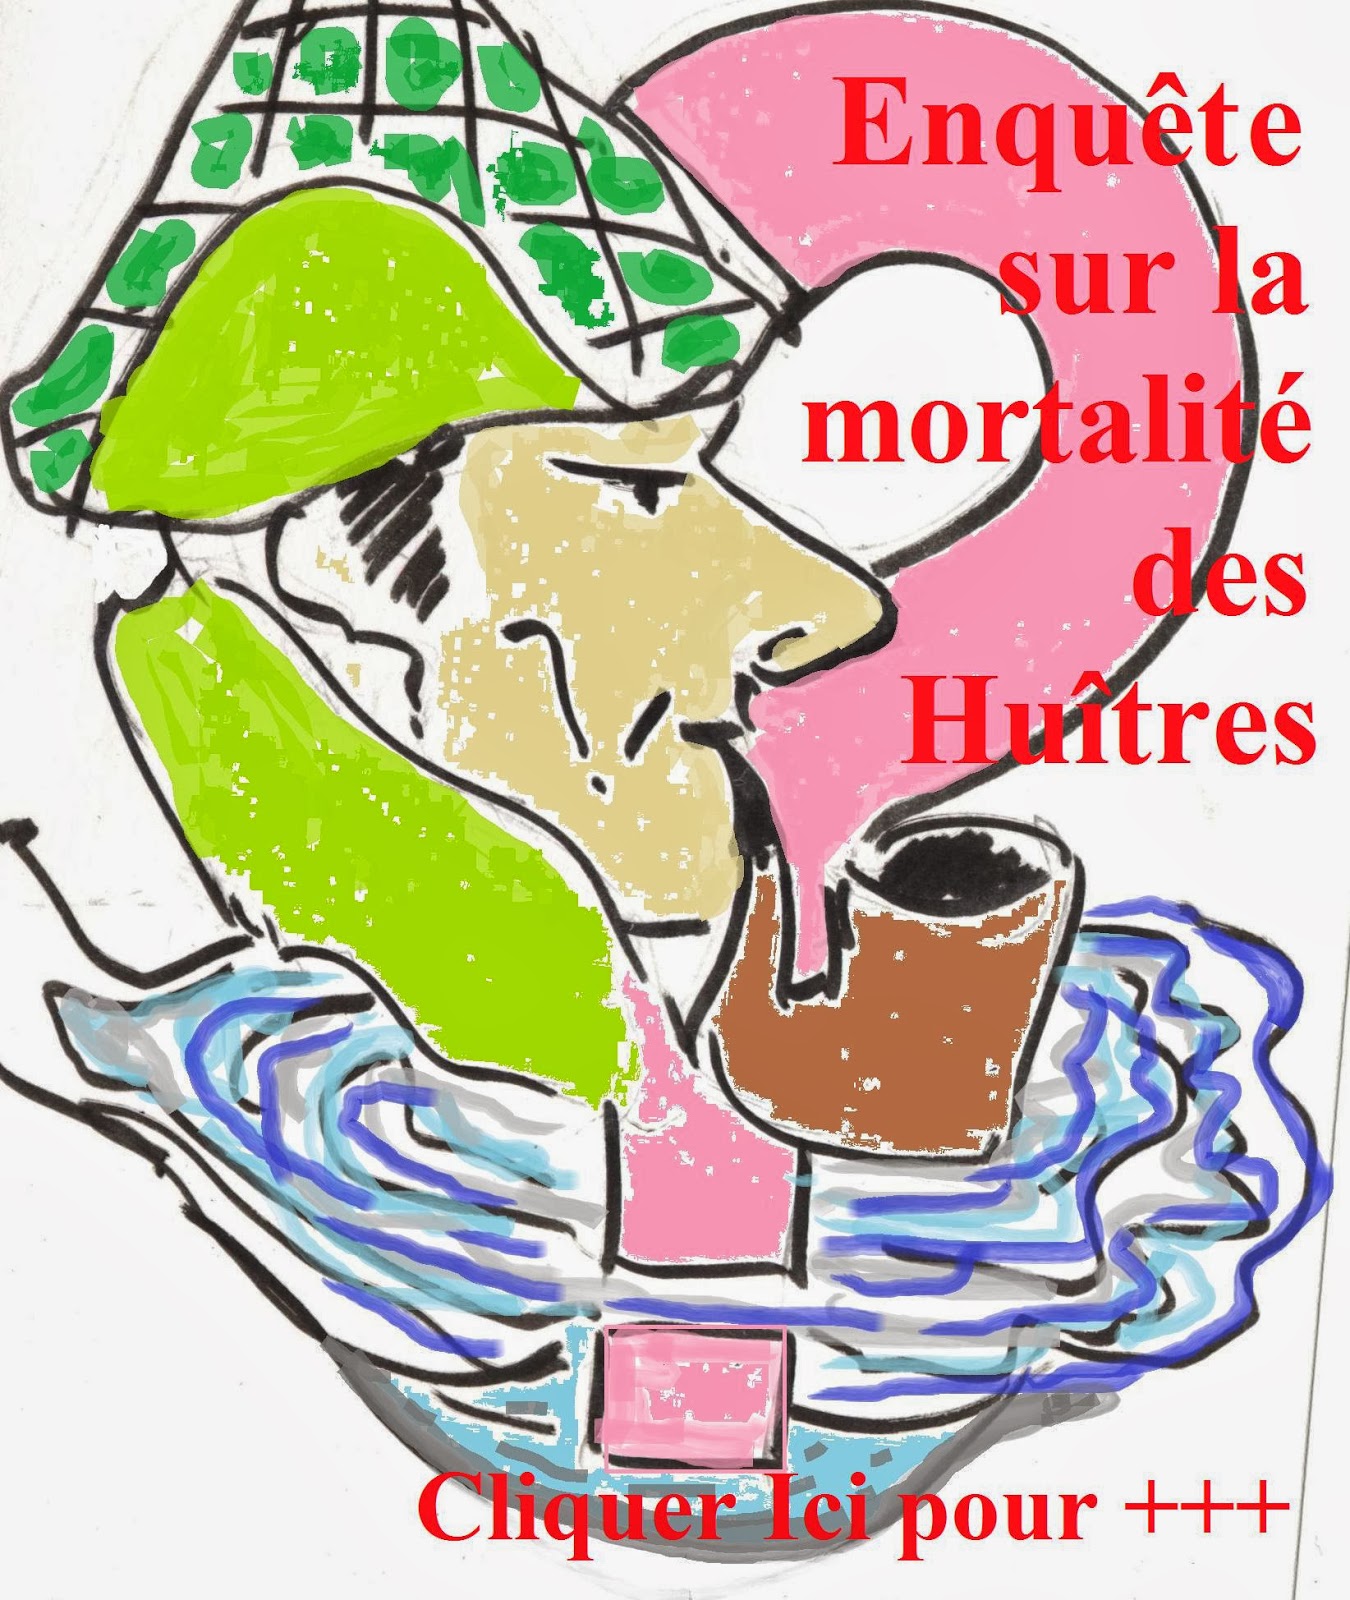 http://aquaculture-aquablog.blogspot.fr/2014/01/mortalite-huitre-enquete-le-bitoux.html#but1